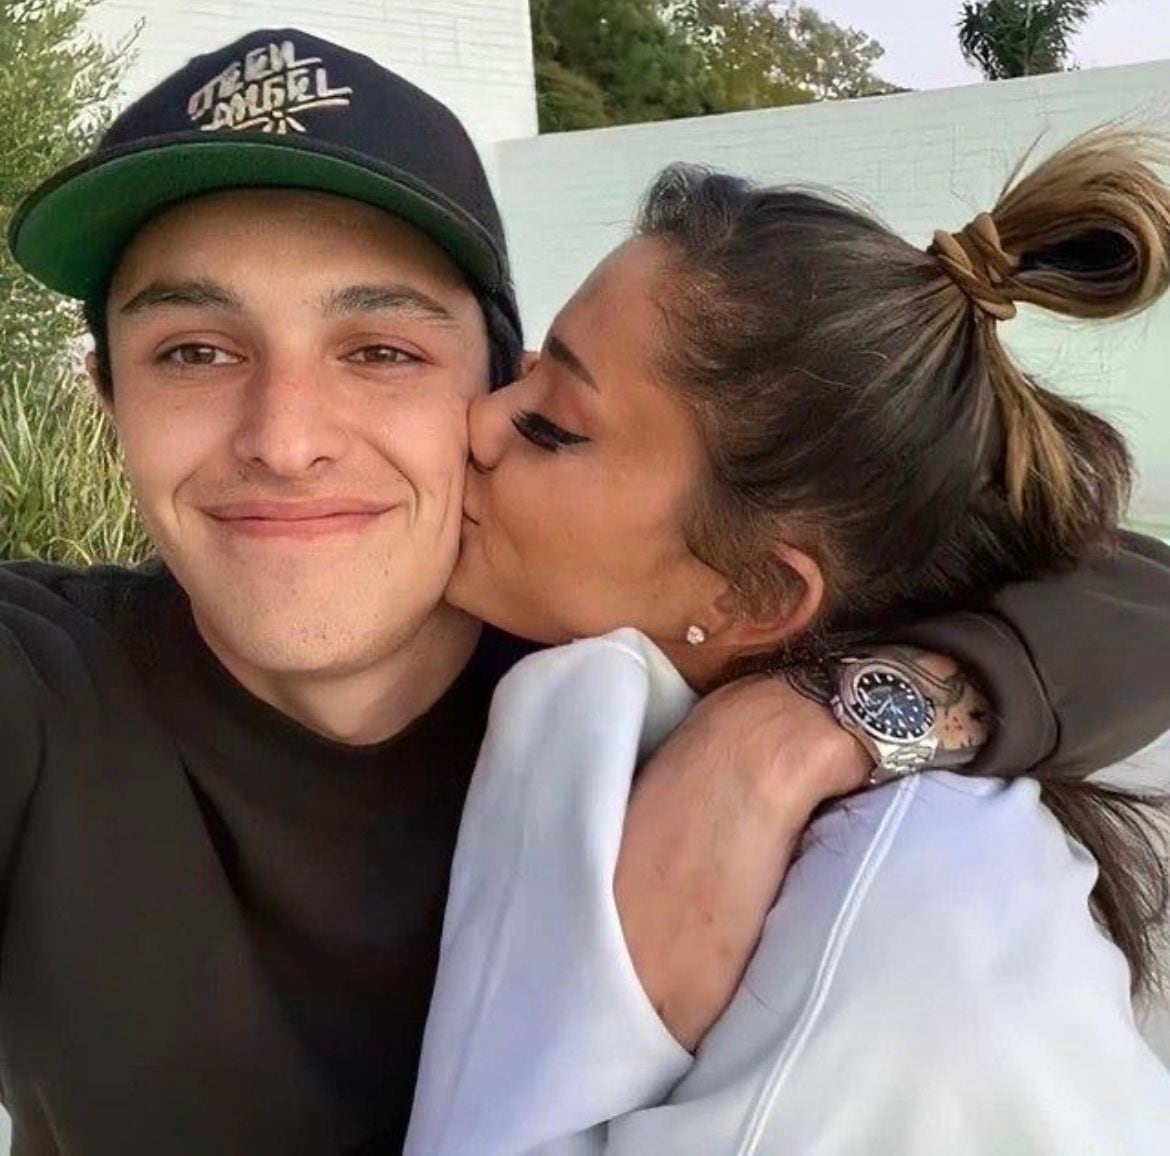 Dalton Gómez y Ariana Grande no han dado muchos detalles sobre su relación. (Foto: Instagram / @daltonnariana)